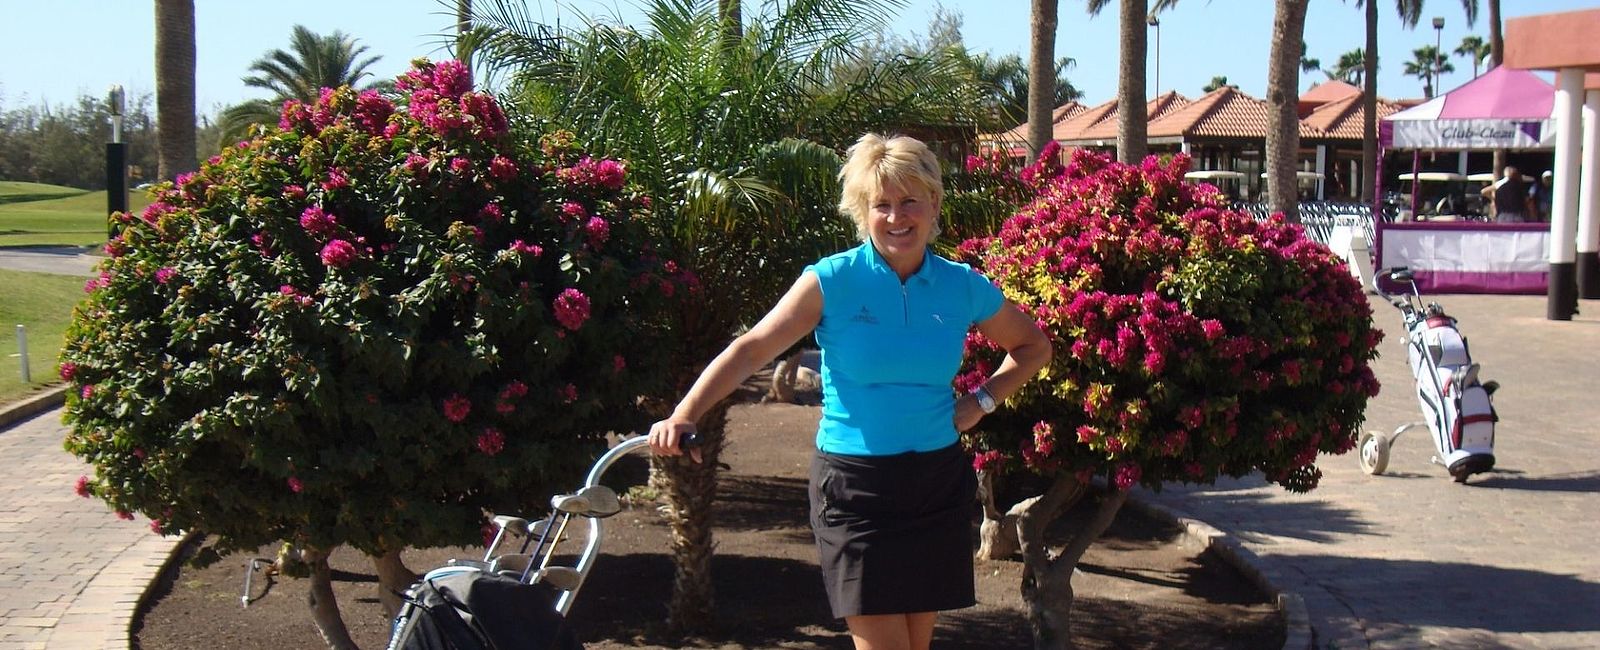  Elsa Honeckers
Golf-Blog 
